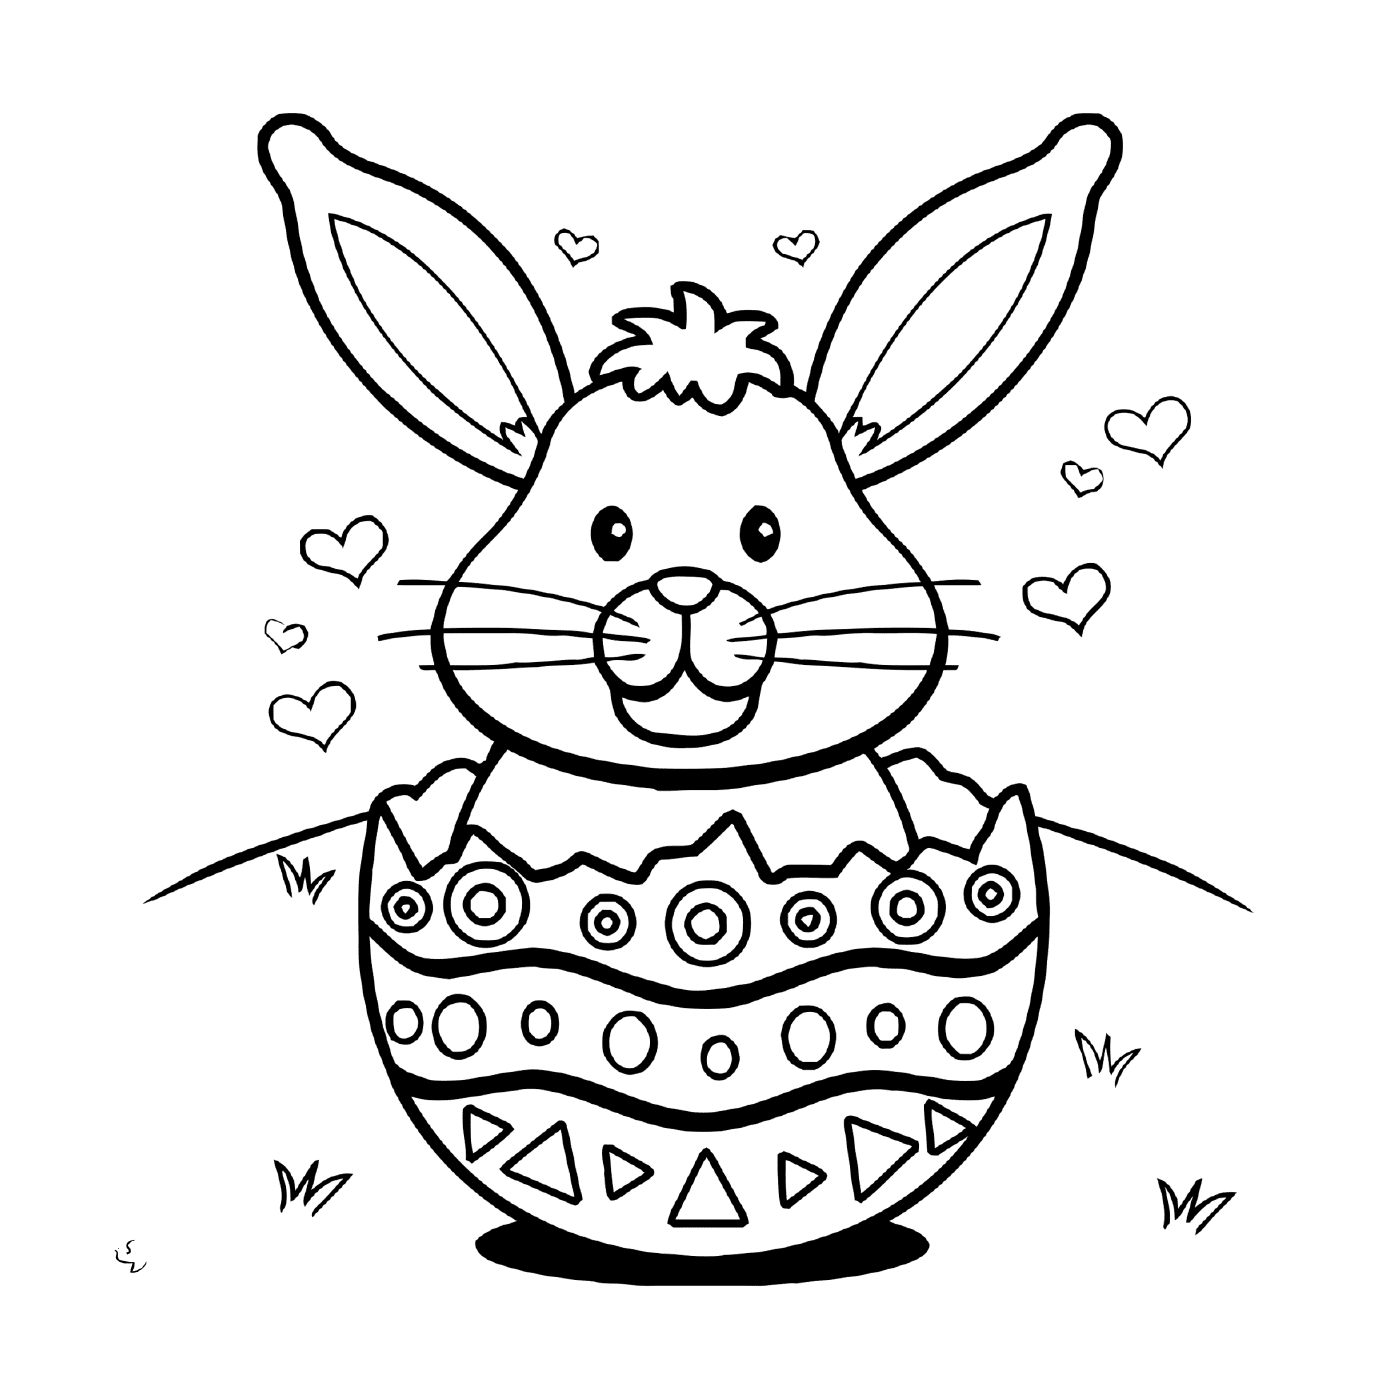  An Easter rabbit in an egg 